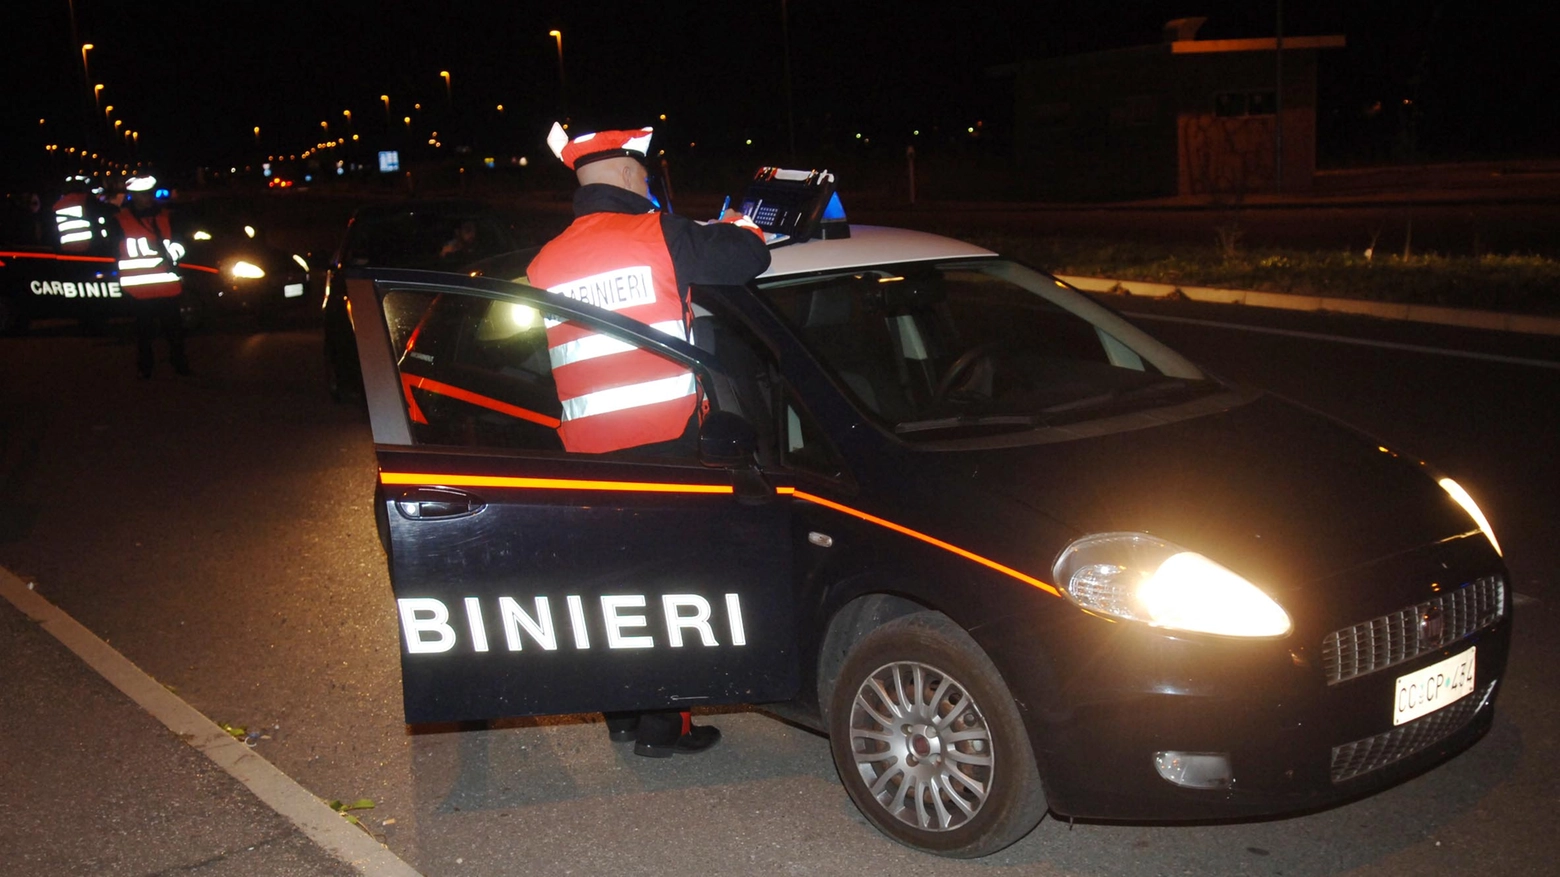 Le ricerche sono state condotte dai carabinieri insieme ai vigili del fuoco